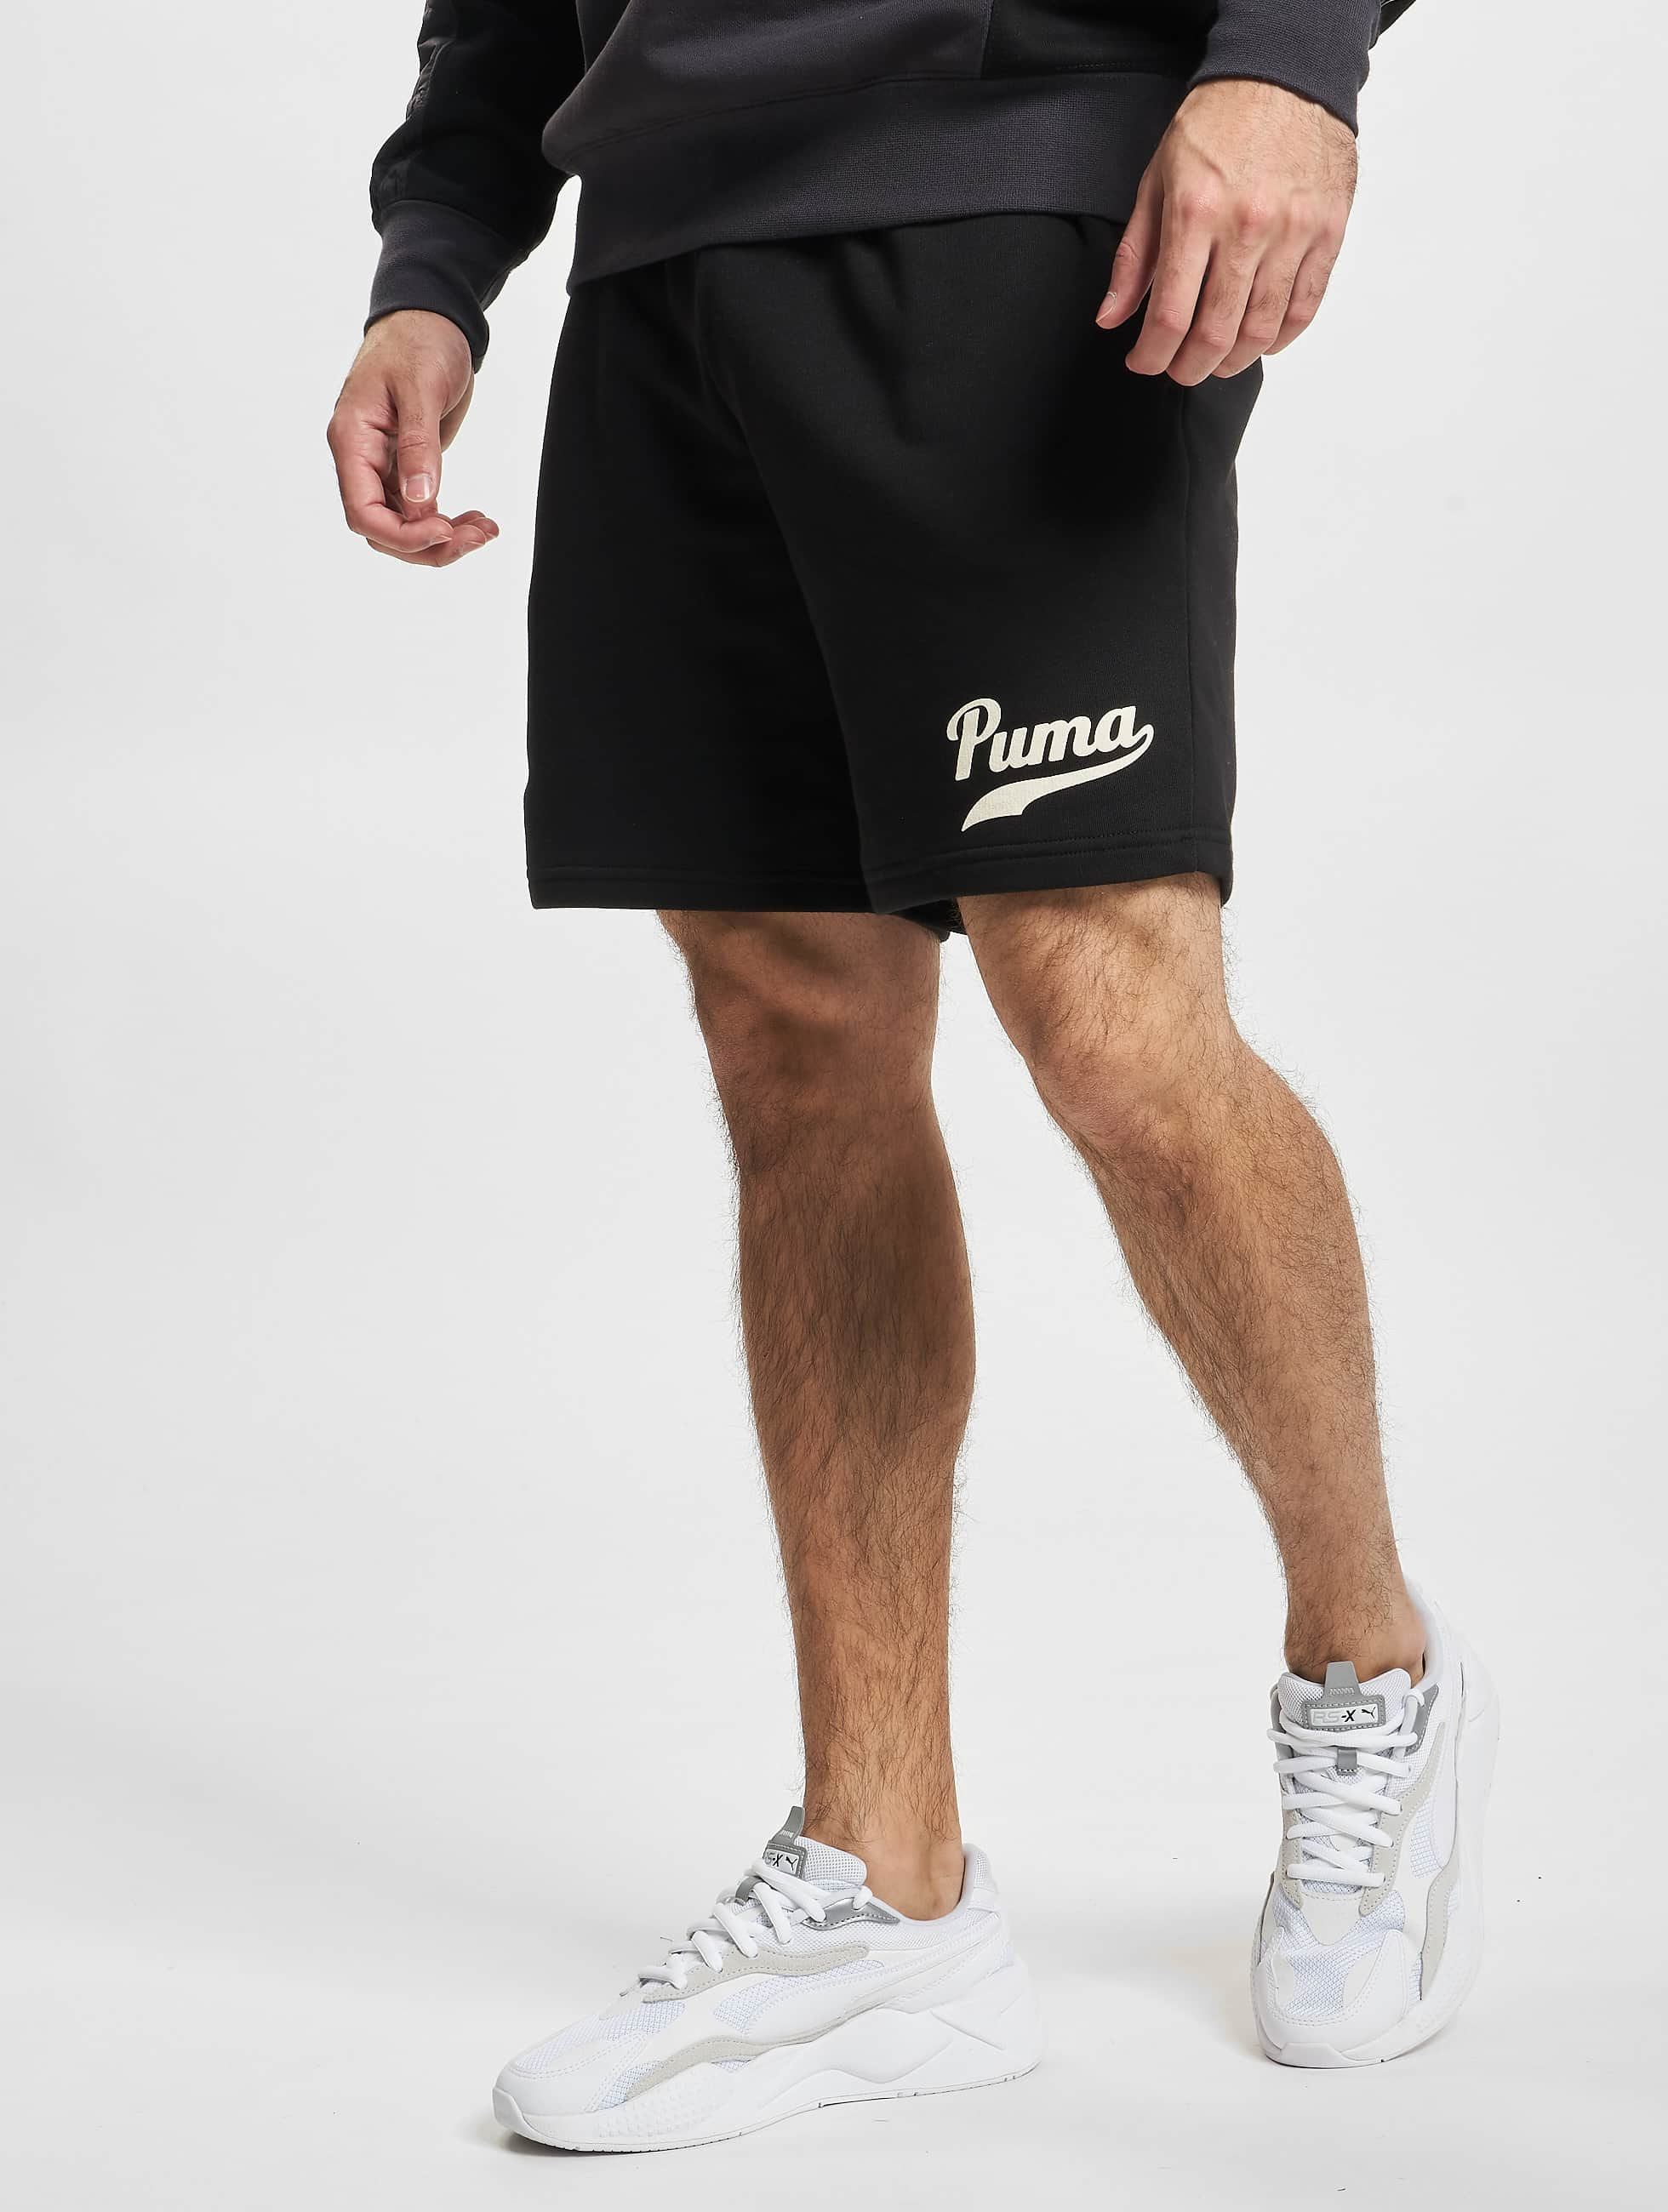 Top 146+ imagen puma shorts men - br.thptnvk.edu.vn